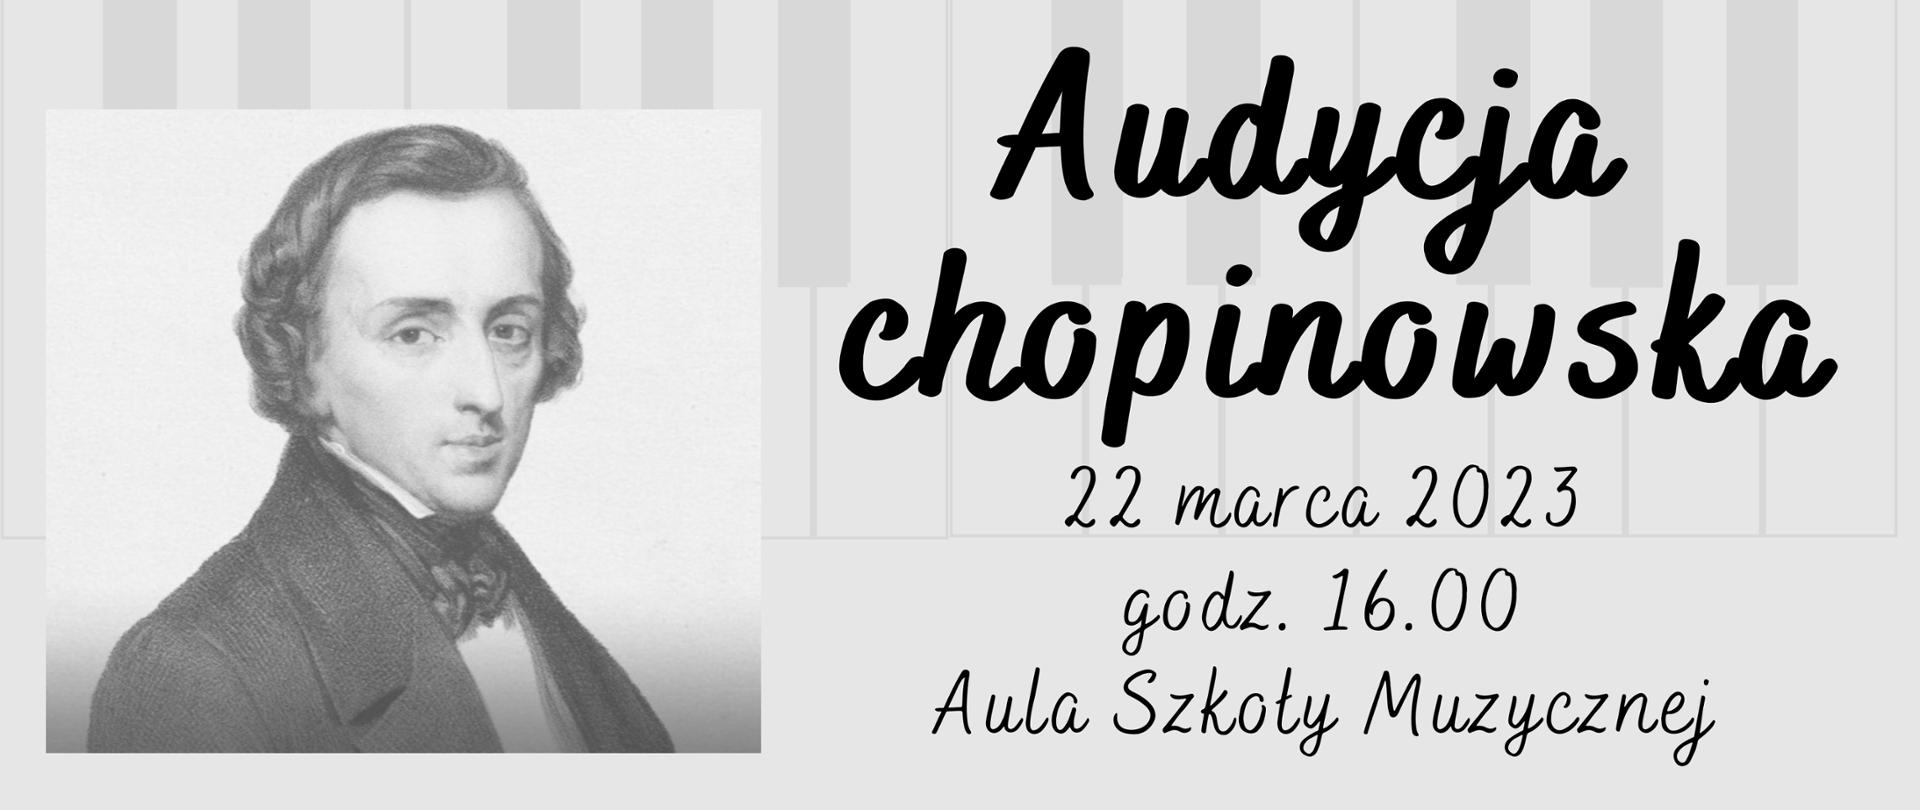 Zdjęcie przedstawia Chopina i tekst: Audycja Chopinowska 22 marca 2023 godz. 16.00